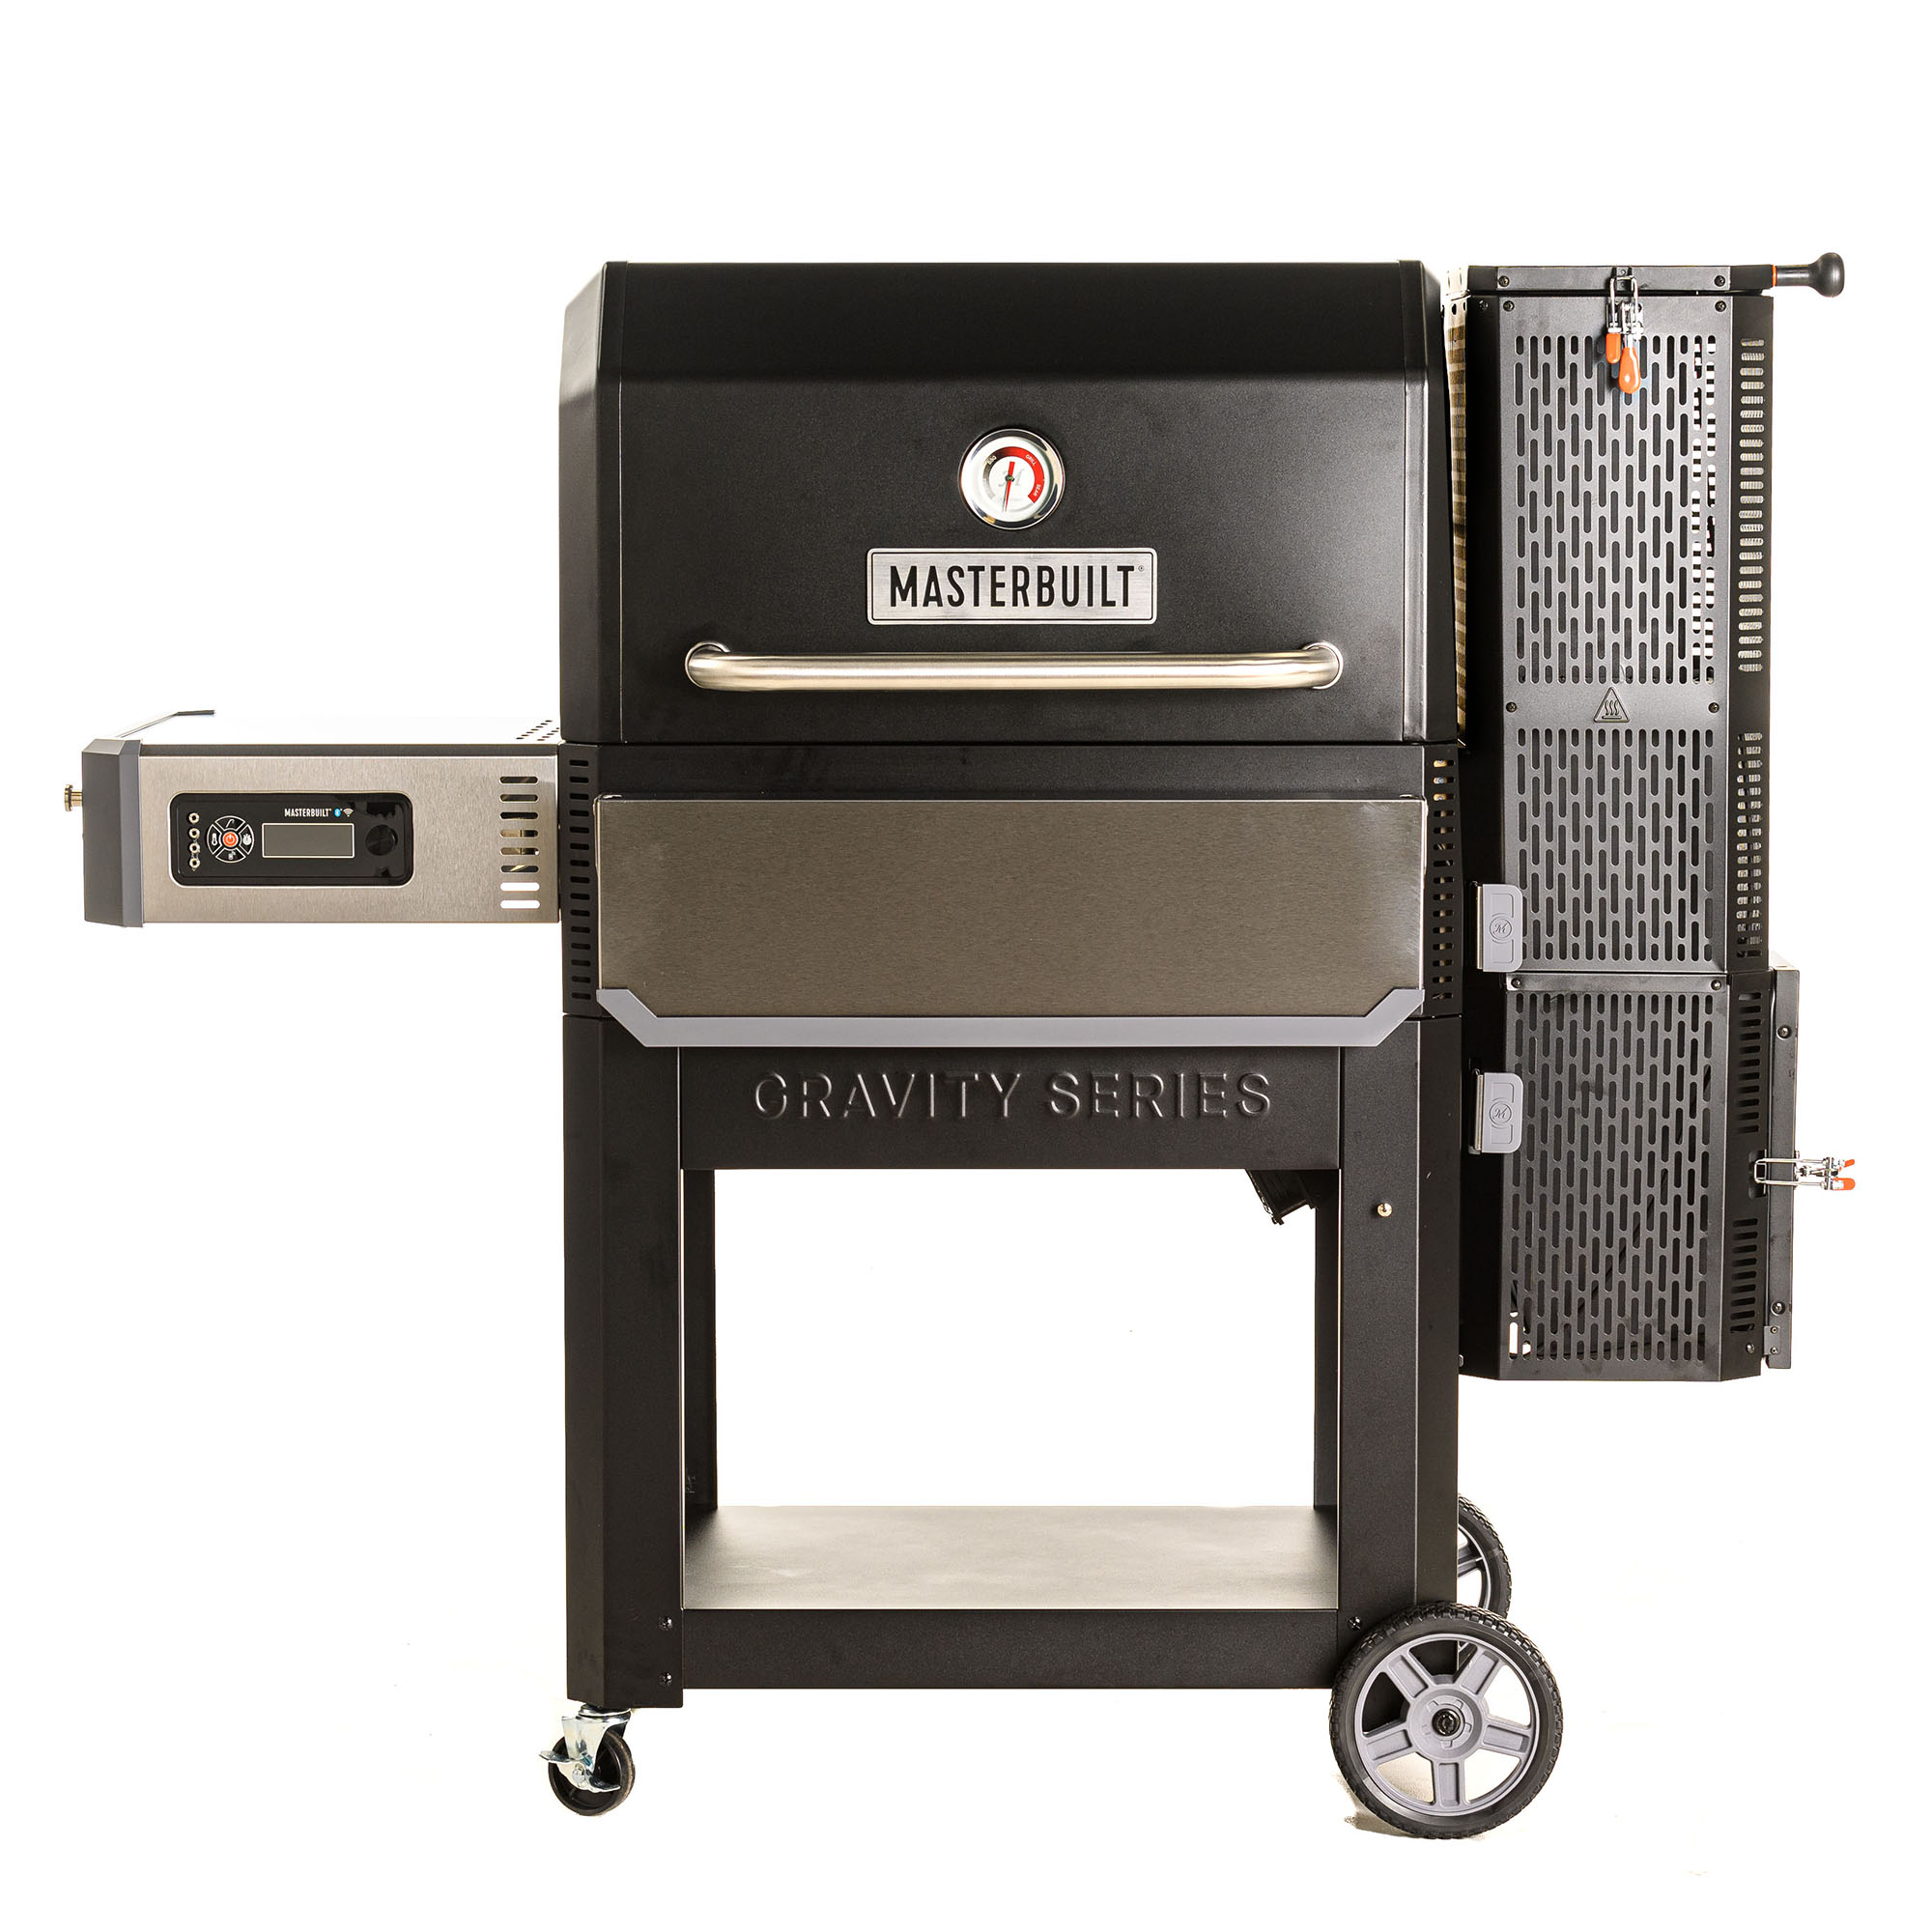 Masterbuilt Gravity Series 1050 Digital Charcoal Grill + Smoker– Walmart, B&M, YMMV – BrickSeek $299